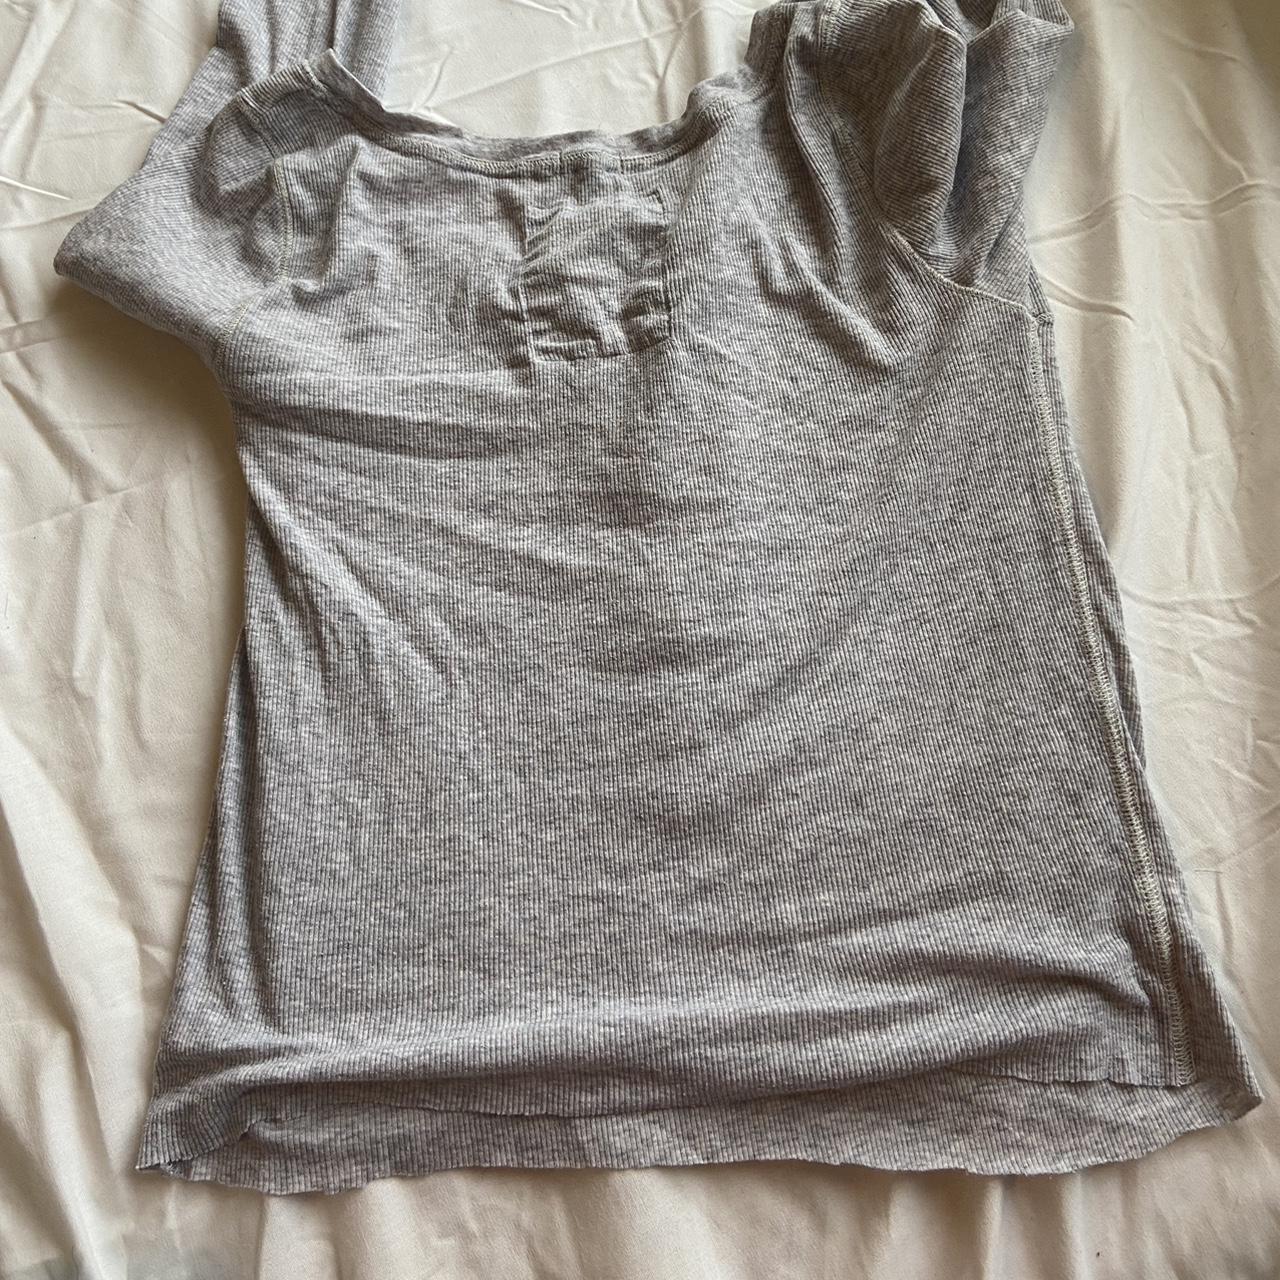 Hollister Co. Women's Grey T-shirt | Depop